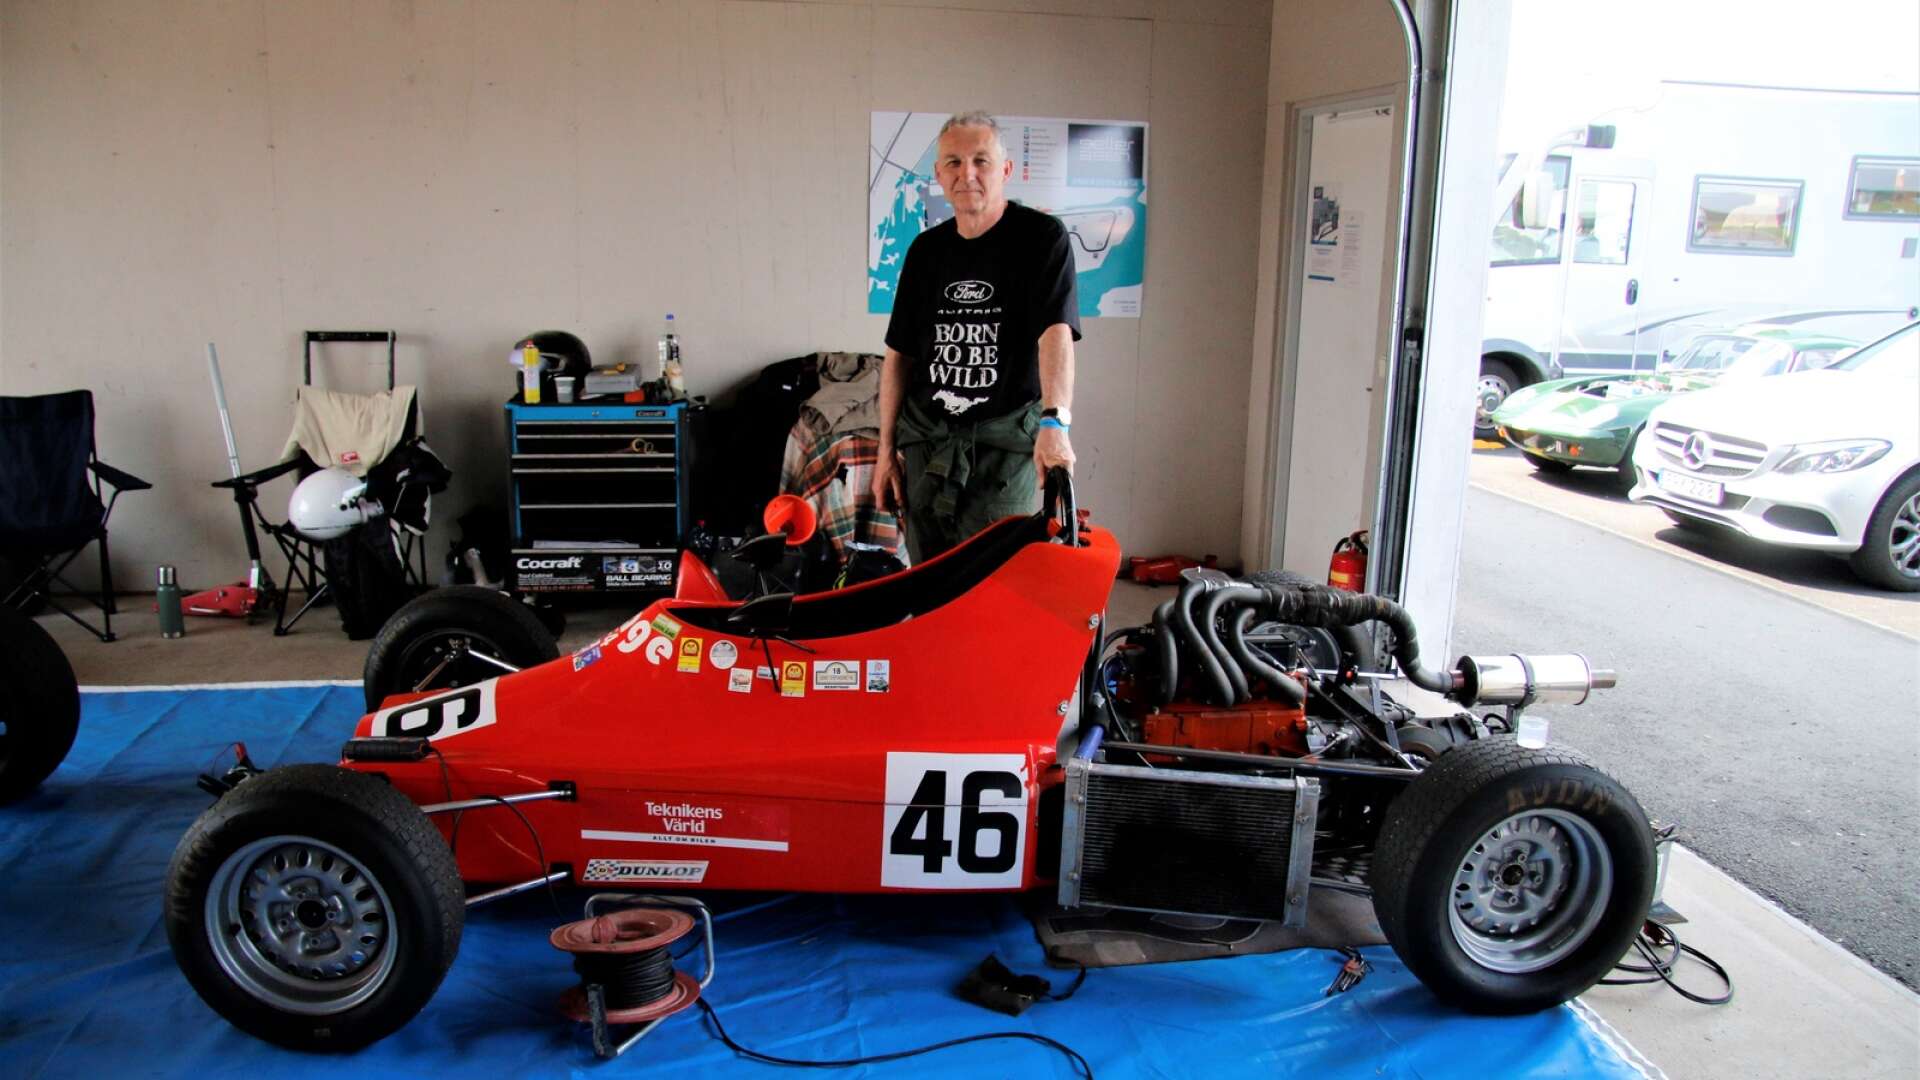 Velodromloppet på Gelleråsen 2021 avgjordes i helgen. Anders Öberg, som bor i Degerfors, kom till start. Här har han delvis plockat isär sin bil, som han byggt själv.